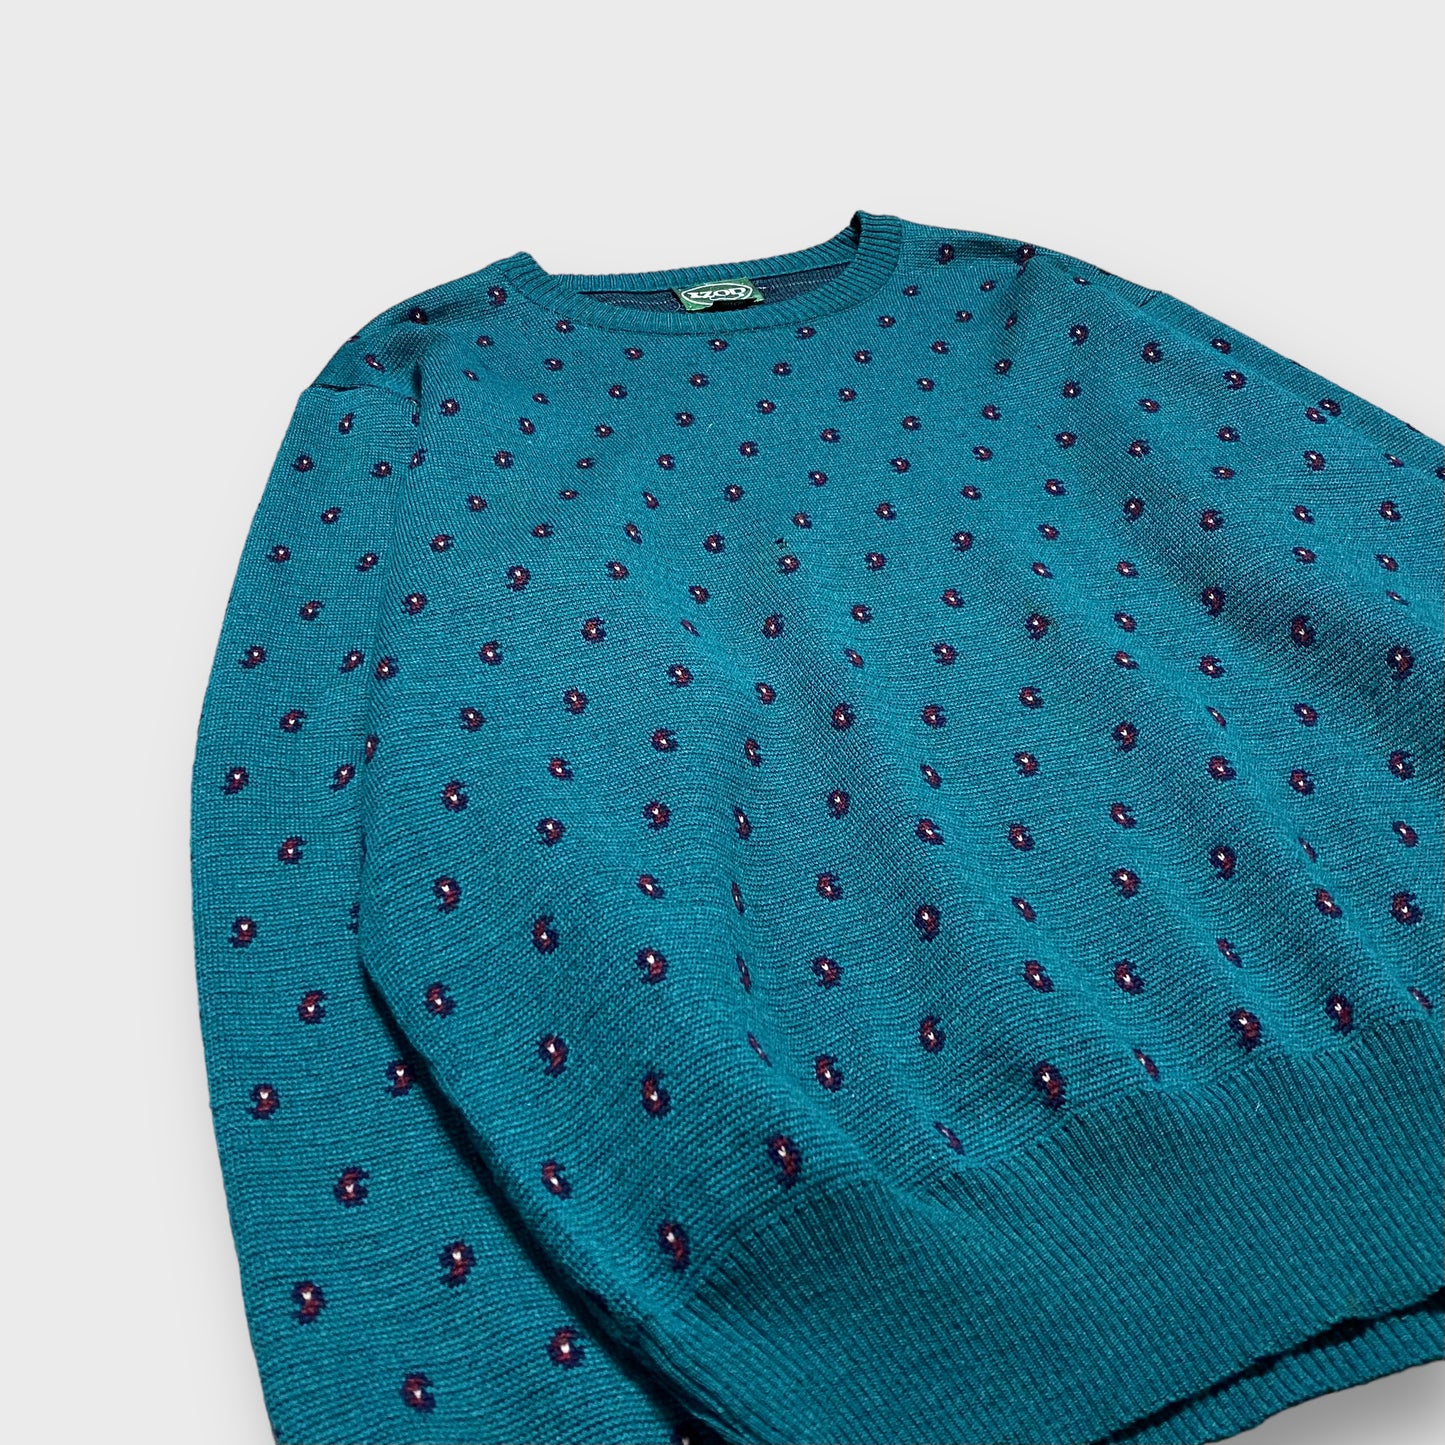 90-00's "IZOD" Paisley pattern knit sweater